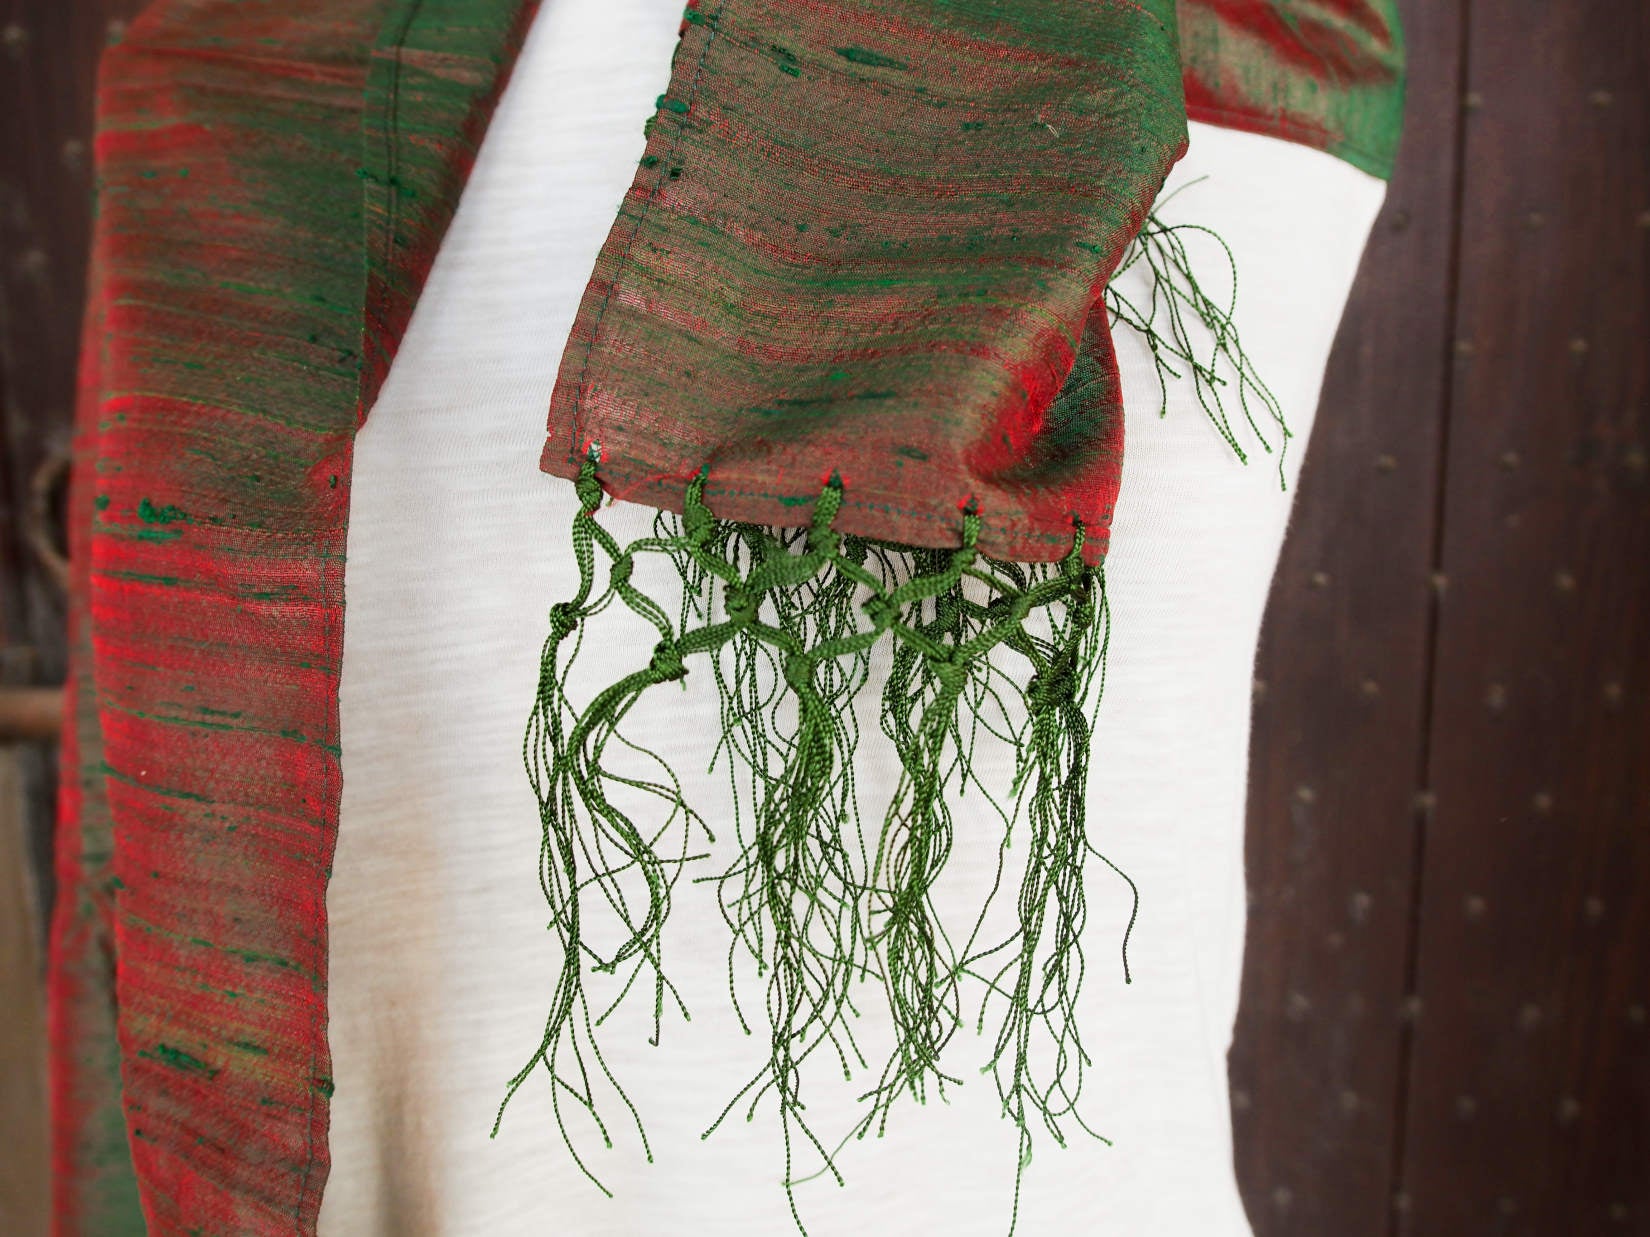 Scialle indiano in shantung di seta , un tessuto di seta selvaggia, di colore unito, caratterizzato da una superficie ruvida, molto irregolare e dall'aspetto grezzo. colore marrone e rosso..